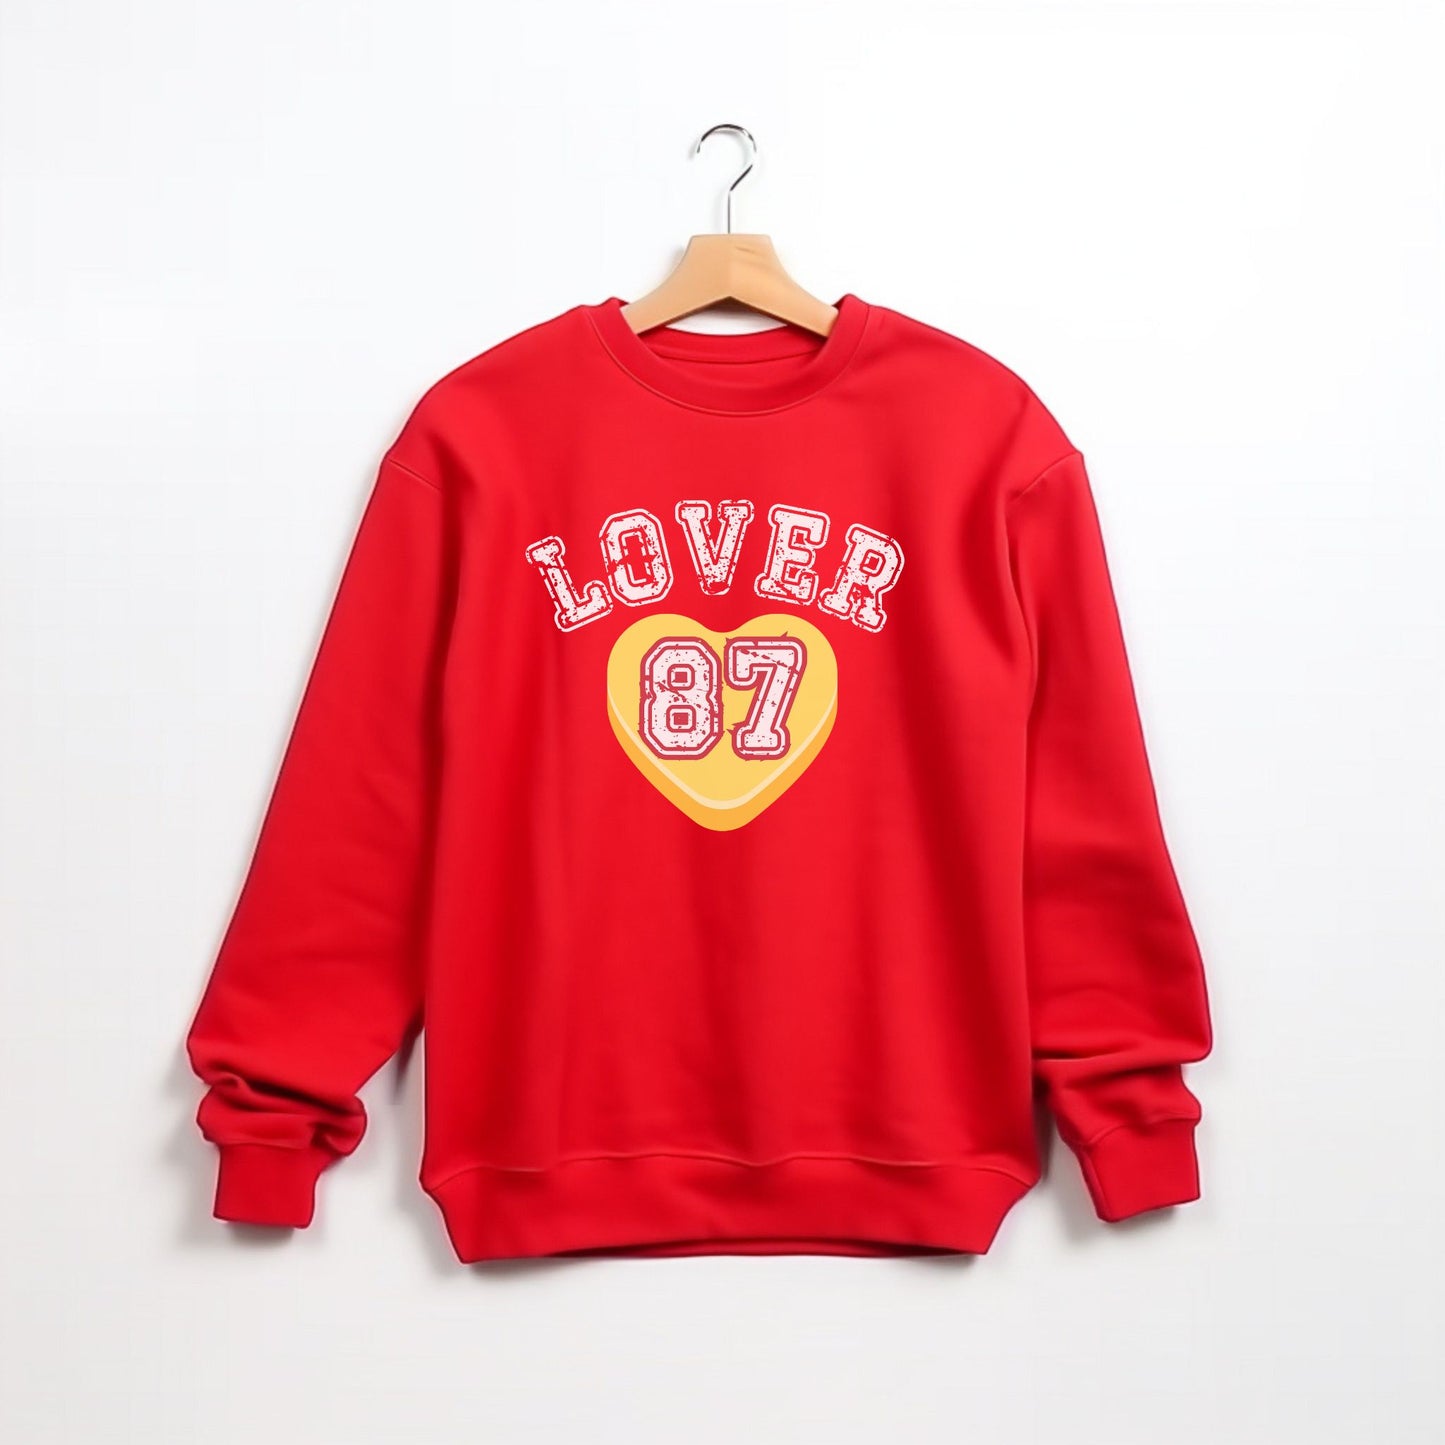 Lover #87 Sweatshirt